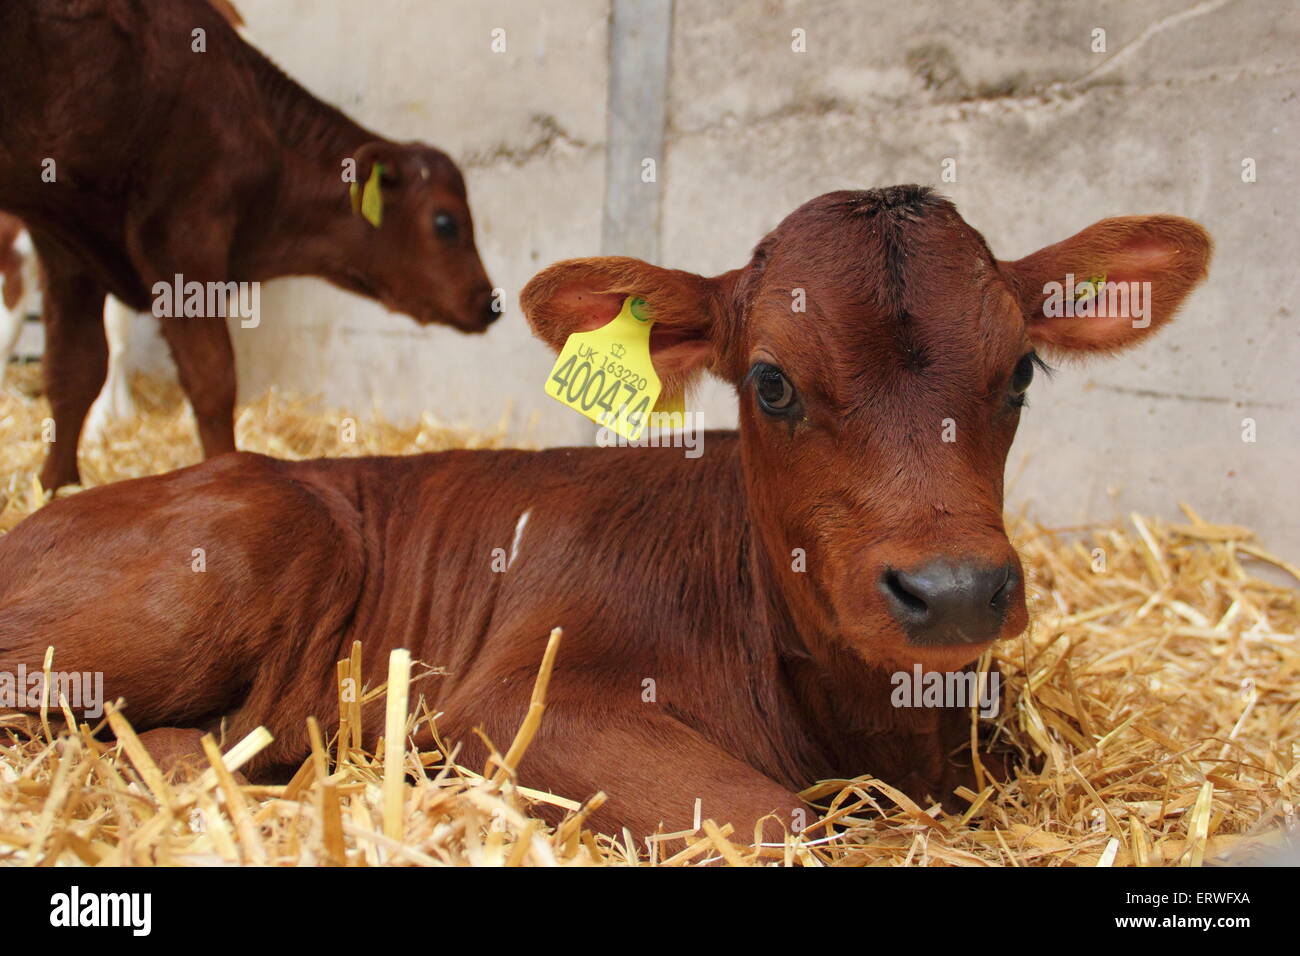 Une semaine, une vieille vache veau tagged jersey se trouve au foin frais sur une ferme laitière dans le Peak District National Prrk Derbyshire Englan Banque D'Images